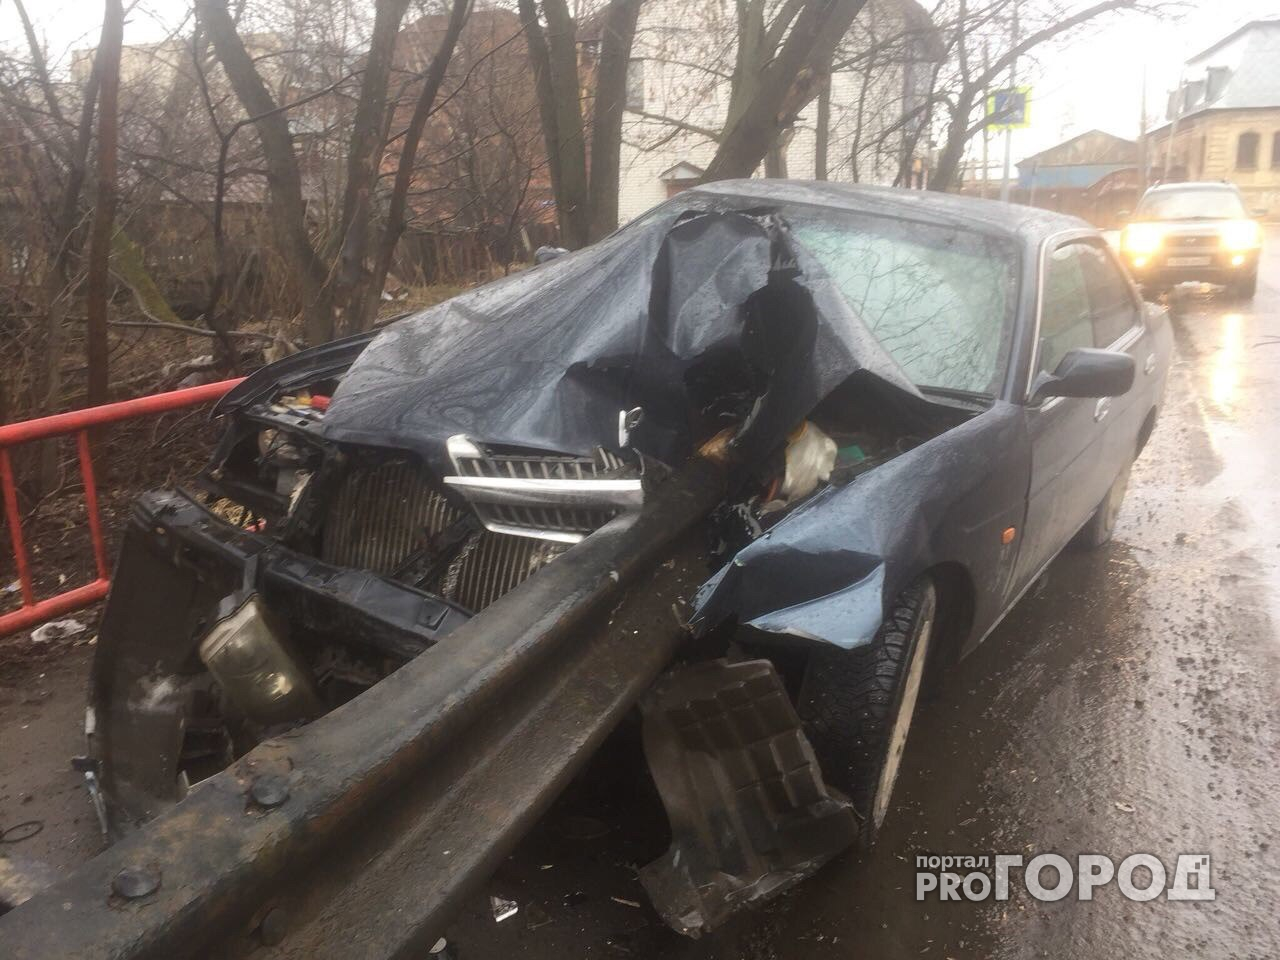 Новый поворот в истории, где машину пронзило ограждением: водитель объявлен в розыск по всему Ярославлю